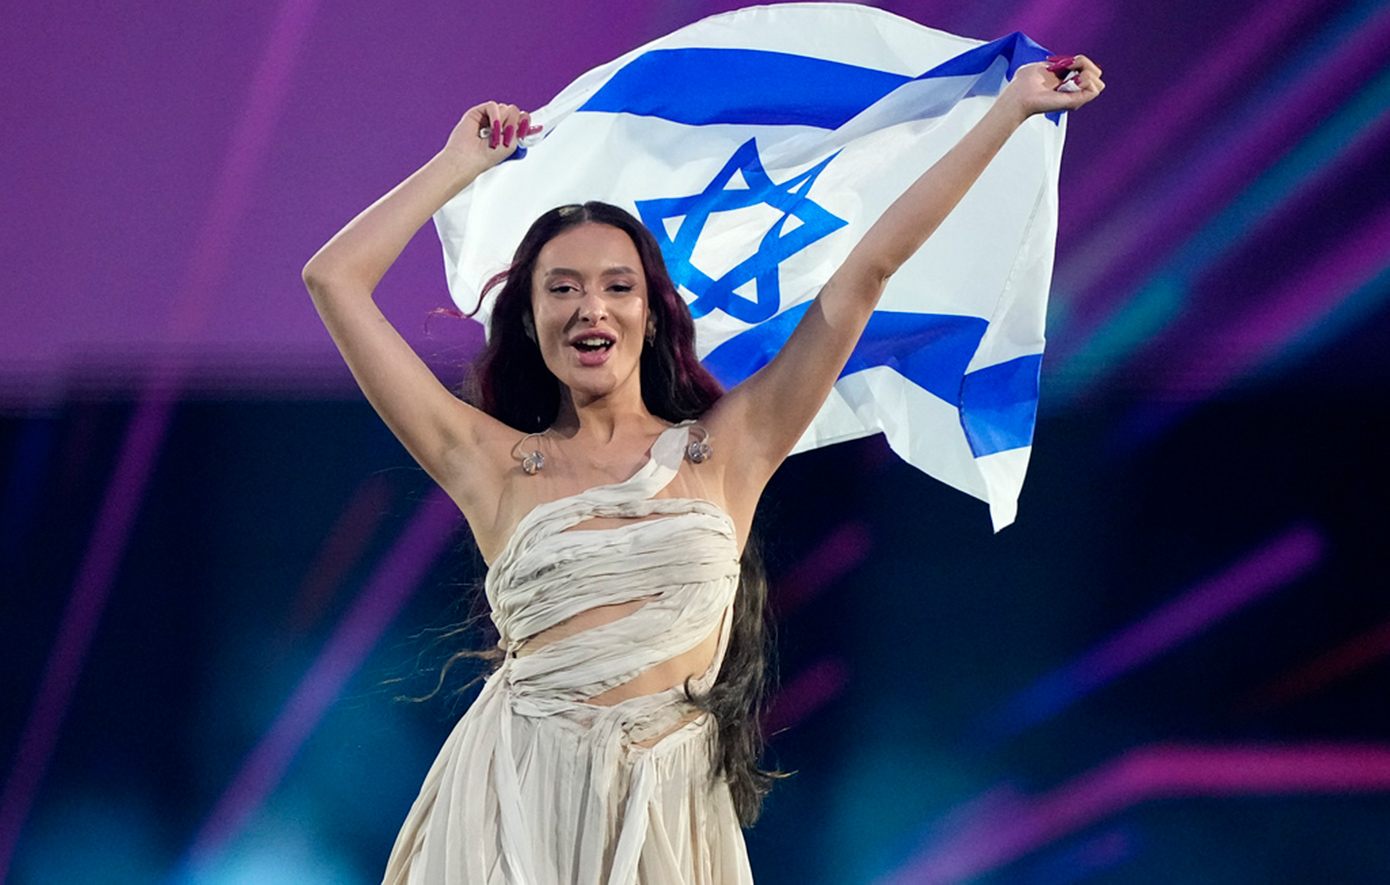 Ξέσπασε σε κλάματα η ισραηλινή τραγουδίστρια όταν έφτασε στη χώρα της &#8211; Δείτε το βίντεο